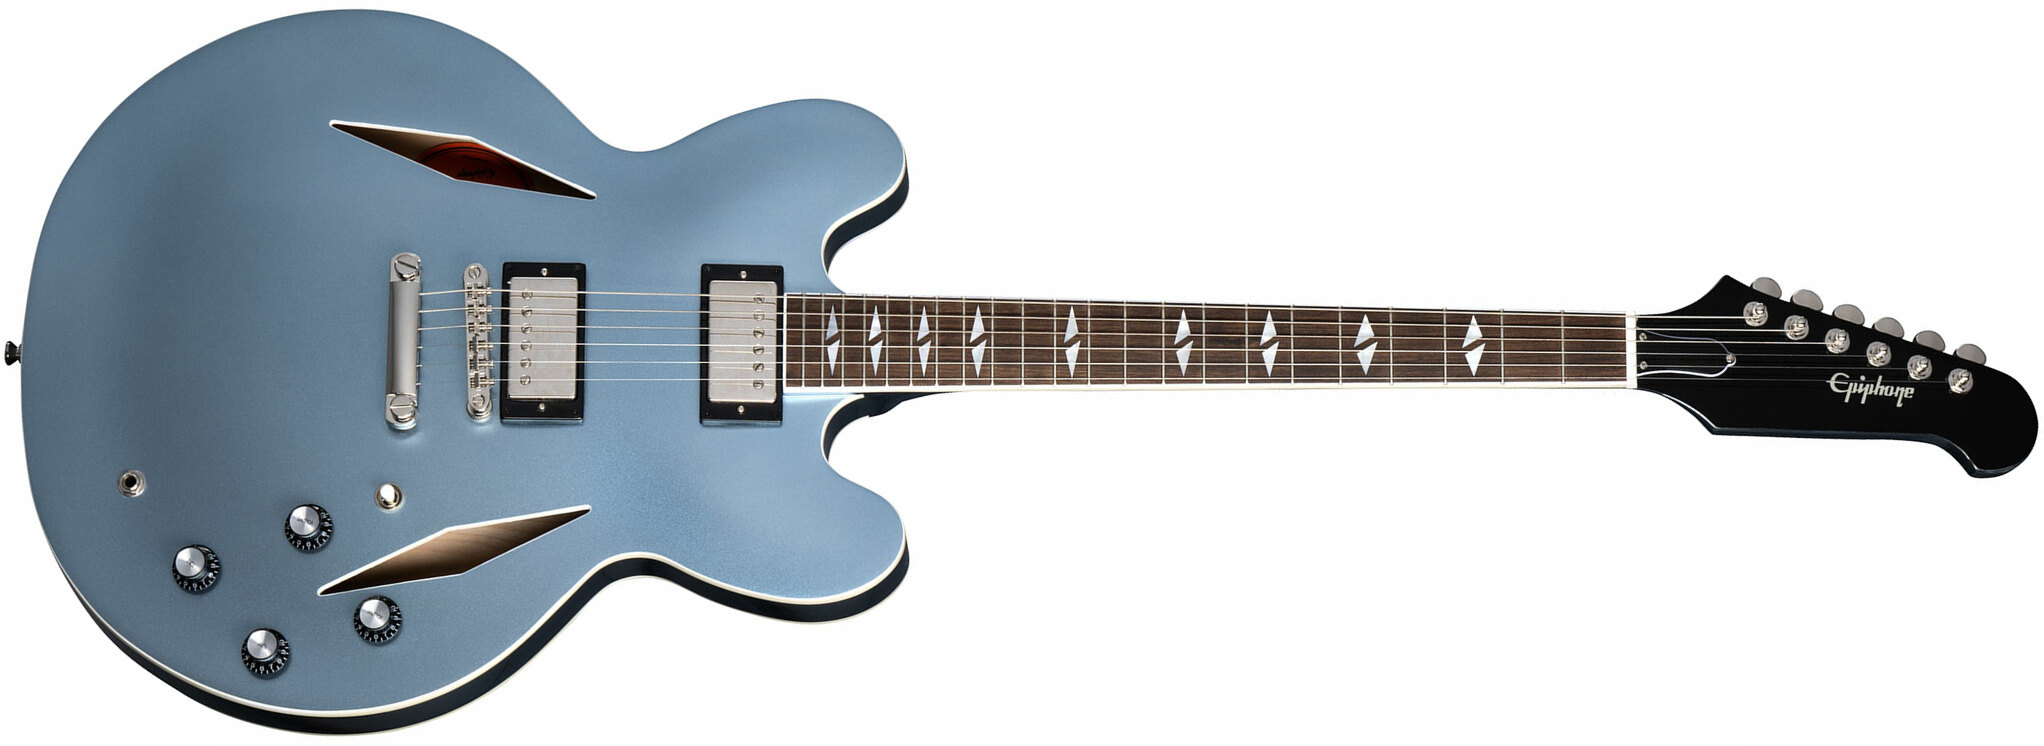 Epiphone Dave Grohl Dg-335 Signature 2h Ht Lau - Pelham Blue - Semi hollow elektriche gitaar - Main picture